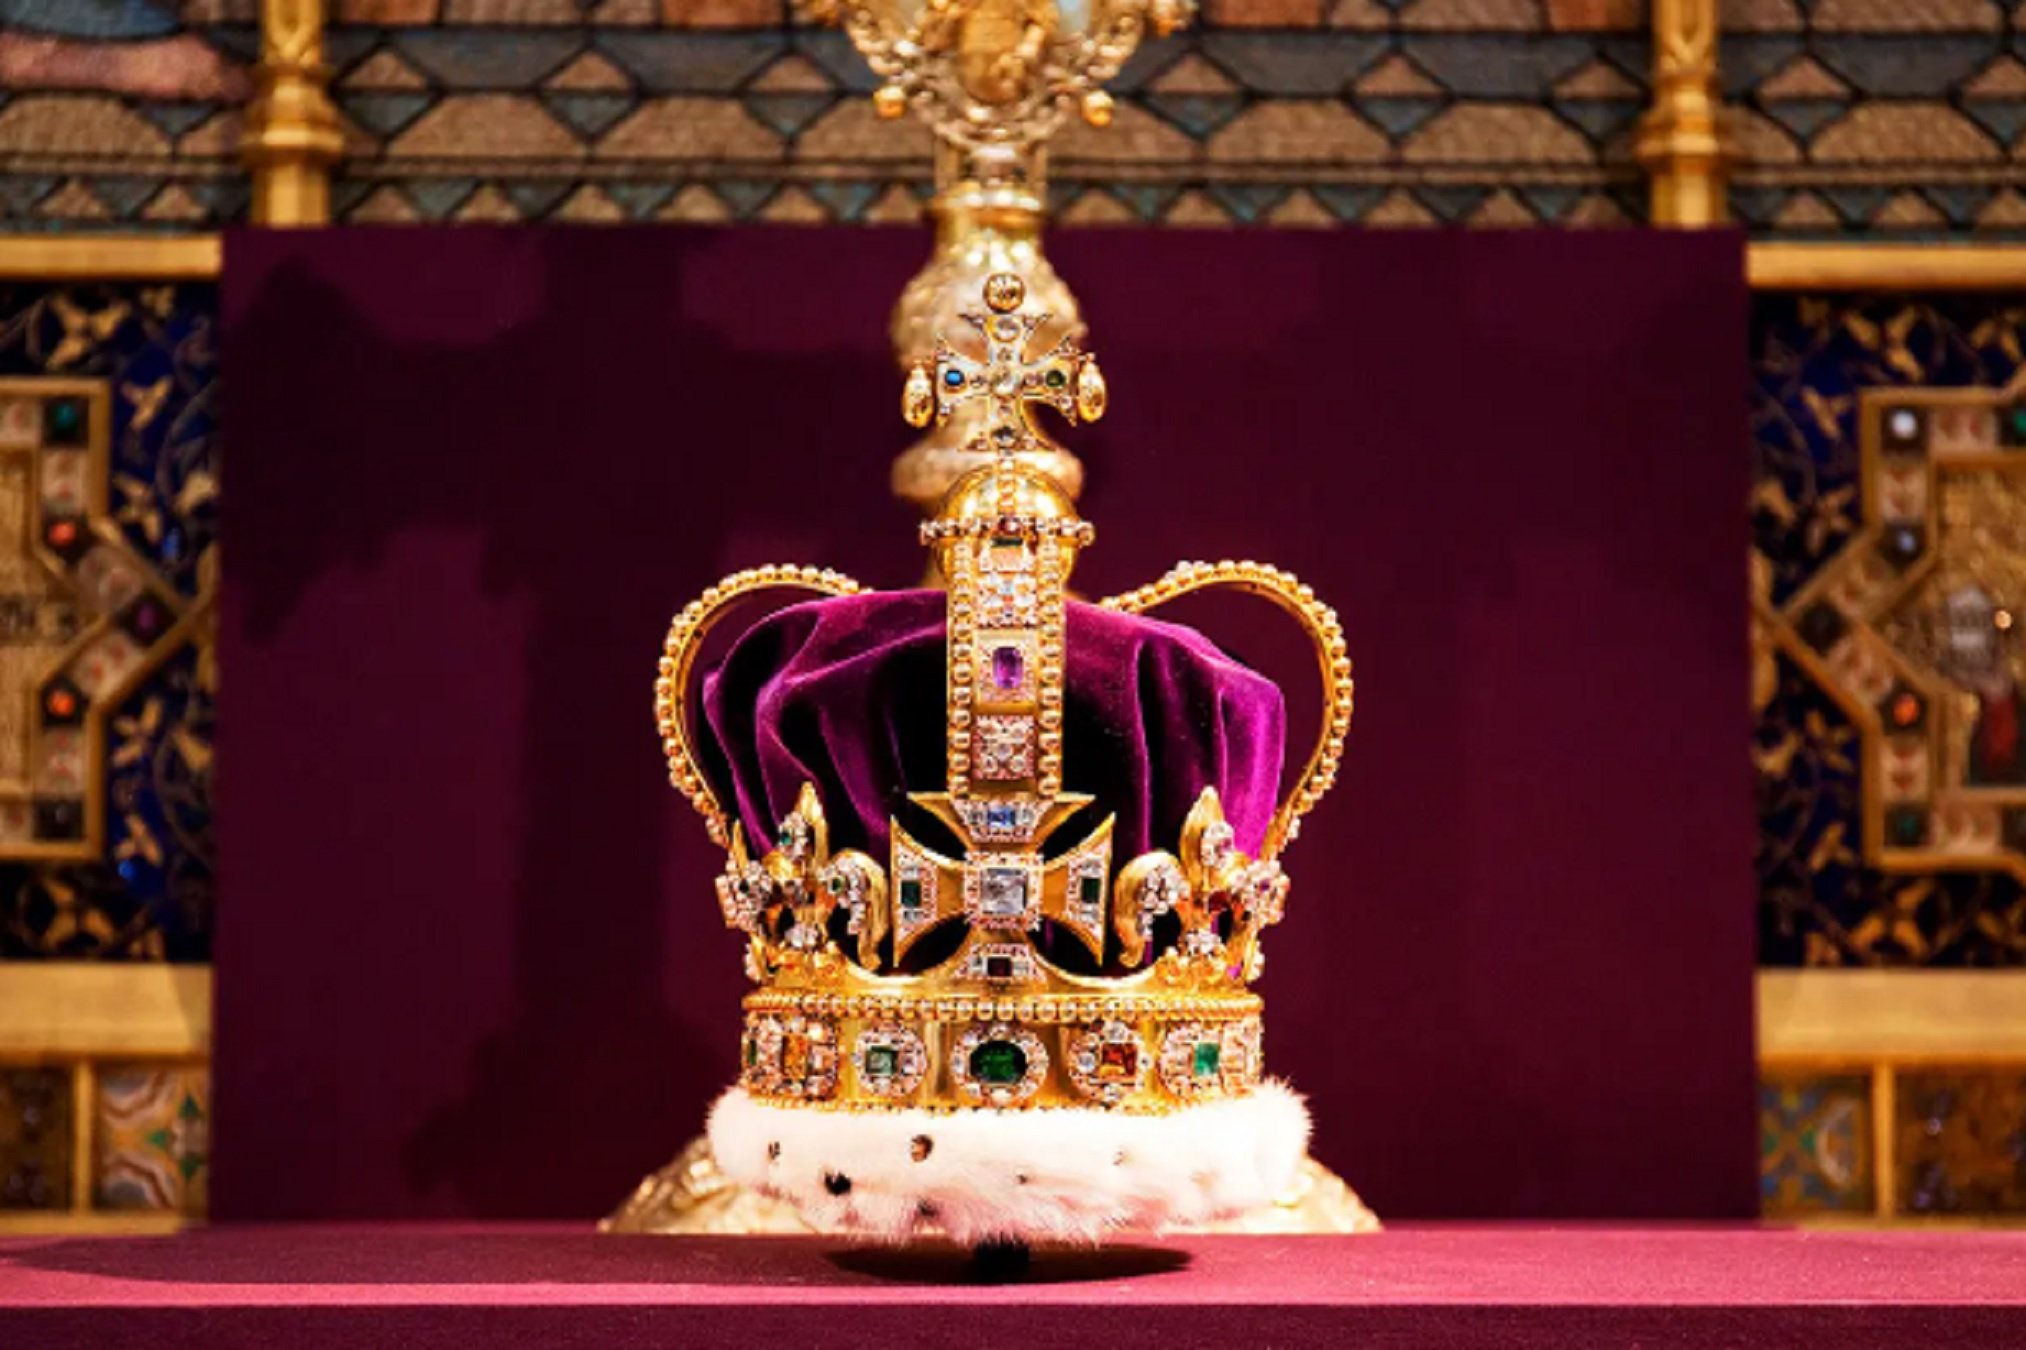 La nueva corona del cabolo de Carlos III: precio en millones de euros y una piedra preciosa prohibida